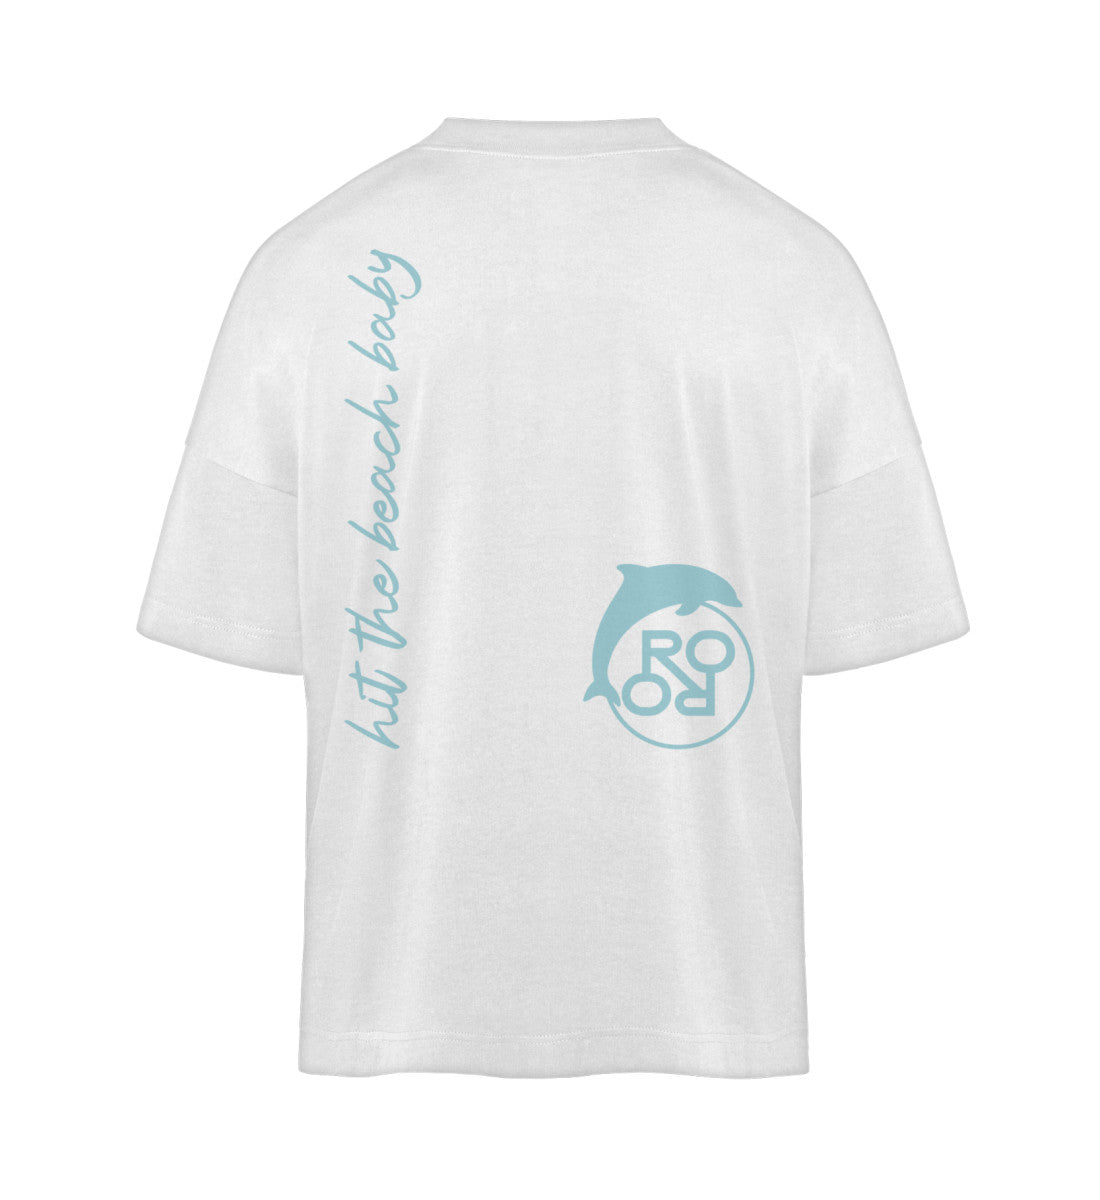 Weißes T-Shirt im Unisex Oversize Fit für Frauen und Männer bedruckt mit dem Design der Roger Rockawoo Kollektion Hit the Beach Baby